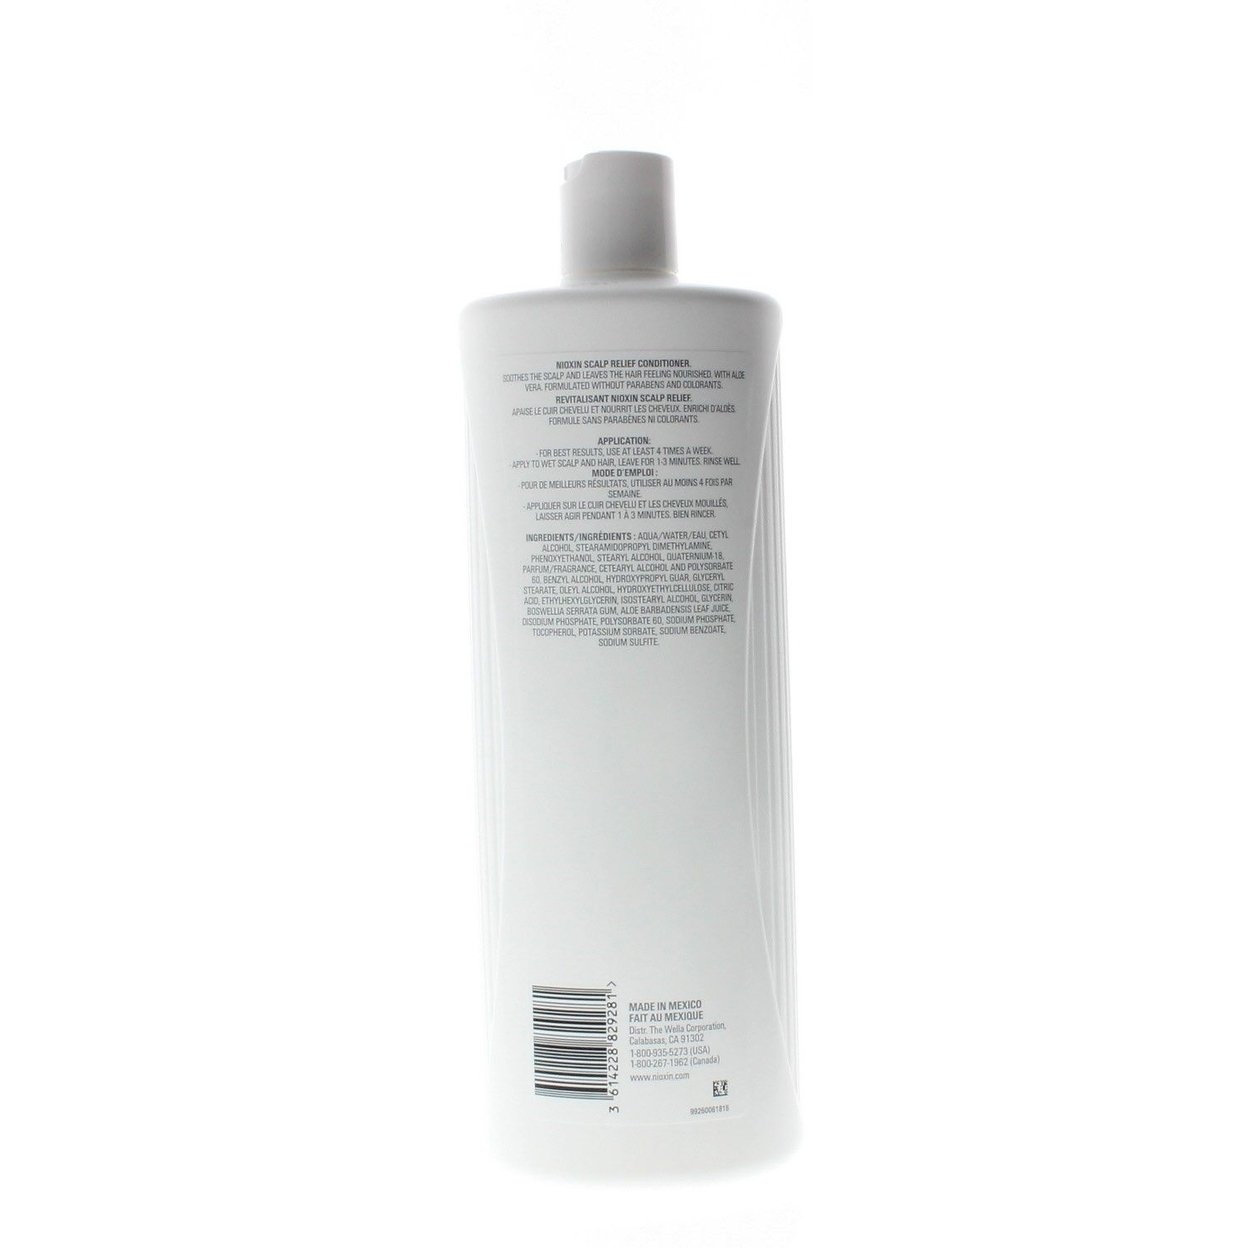 Nioxin Scalp Relief Conditioner 1 Liter/33.8oz